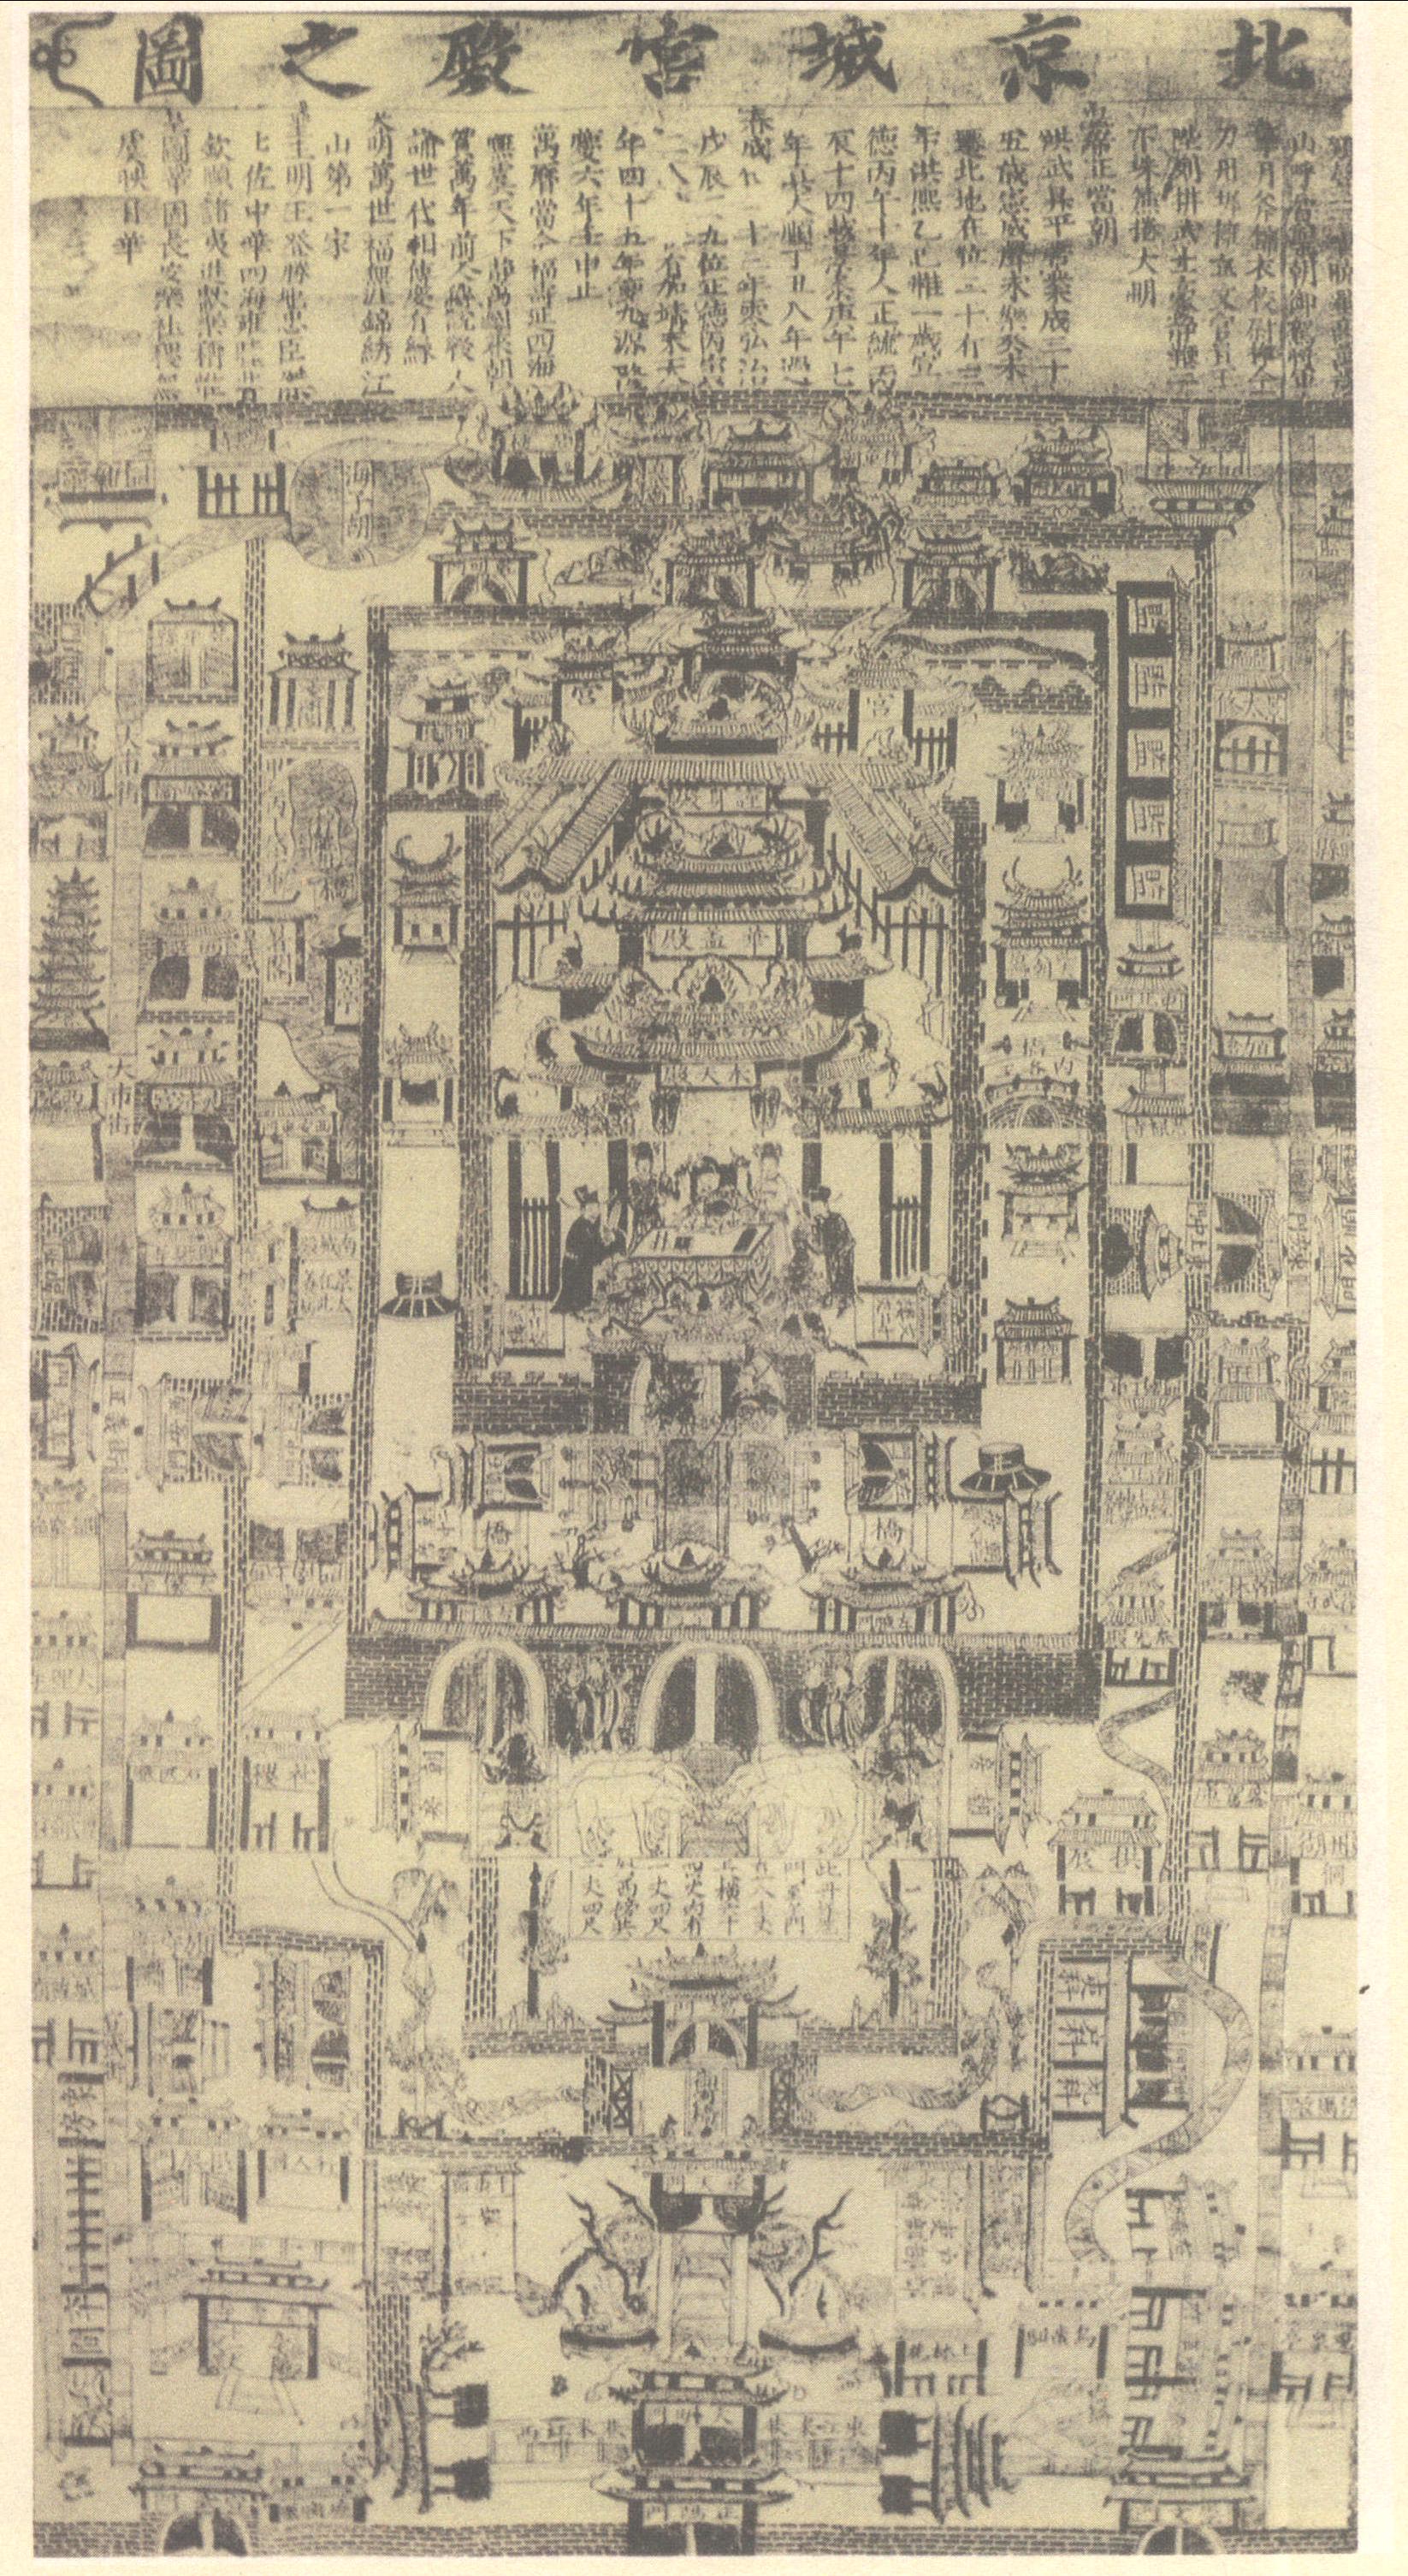 明北京城宫殿之图